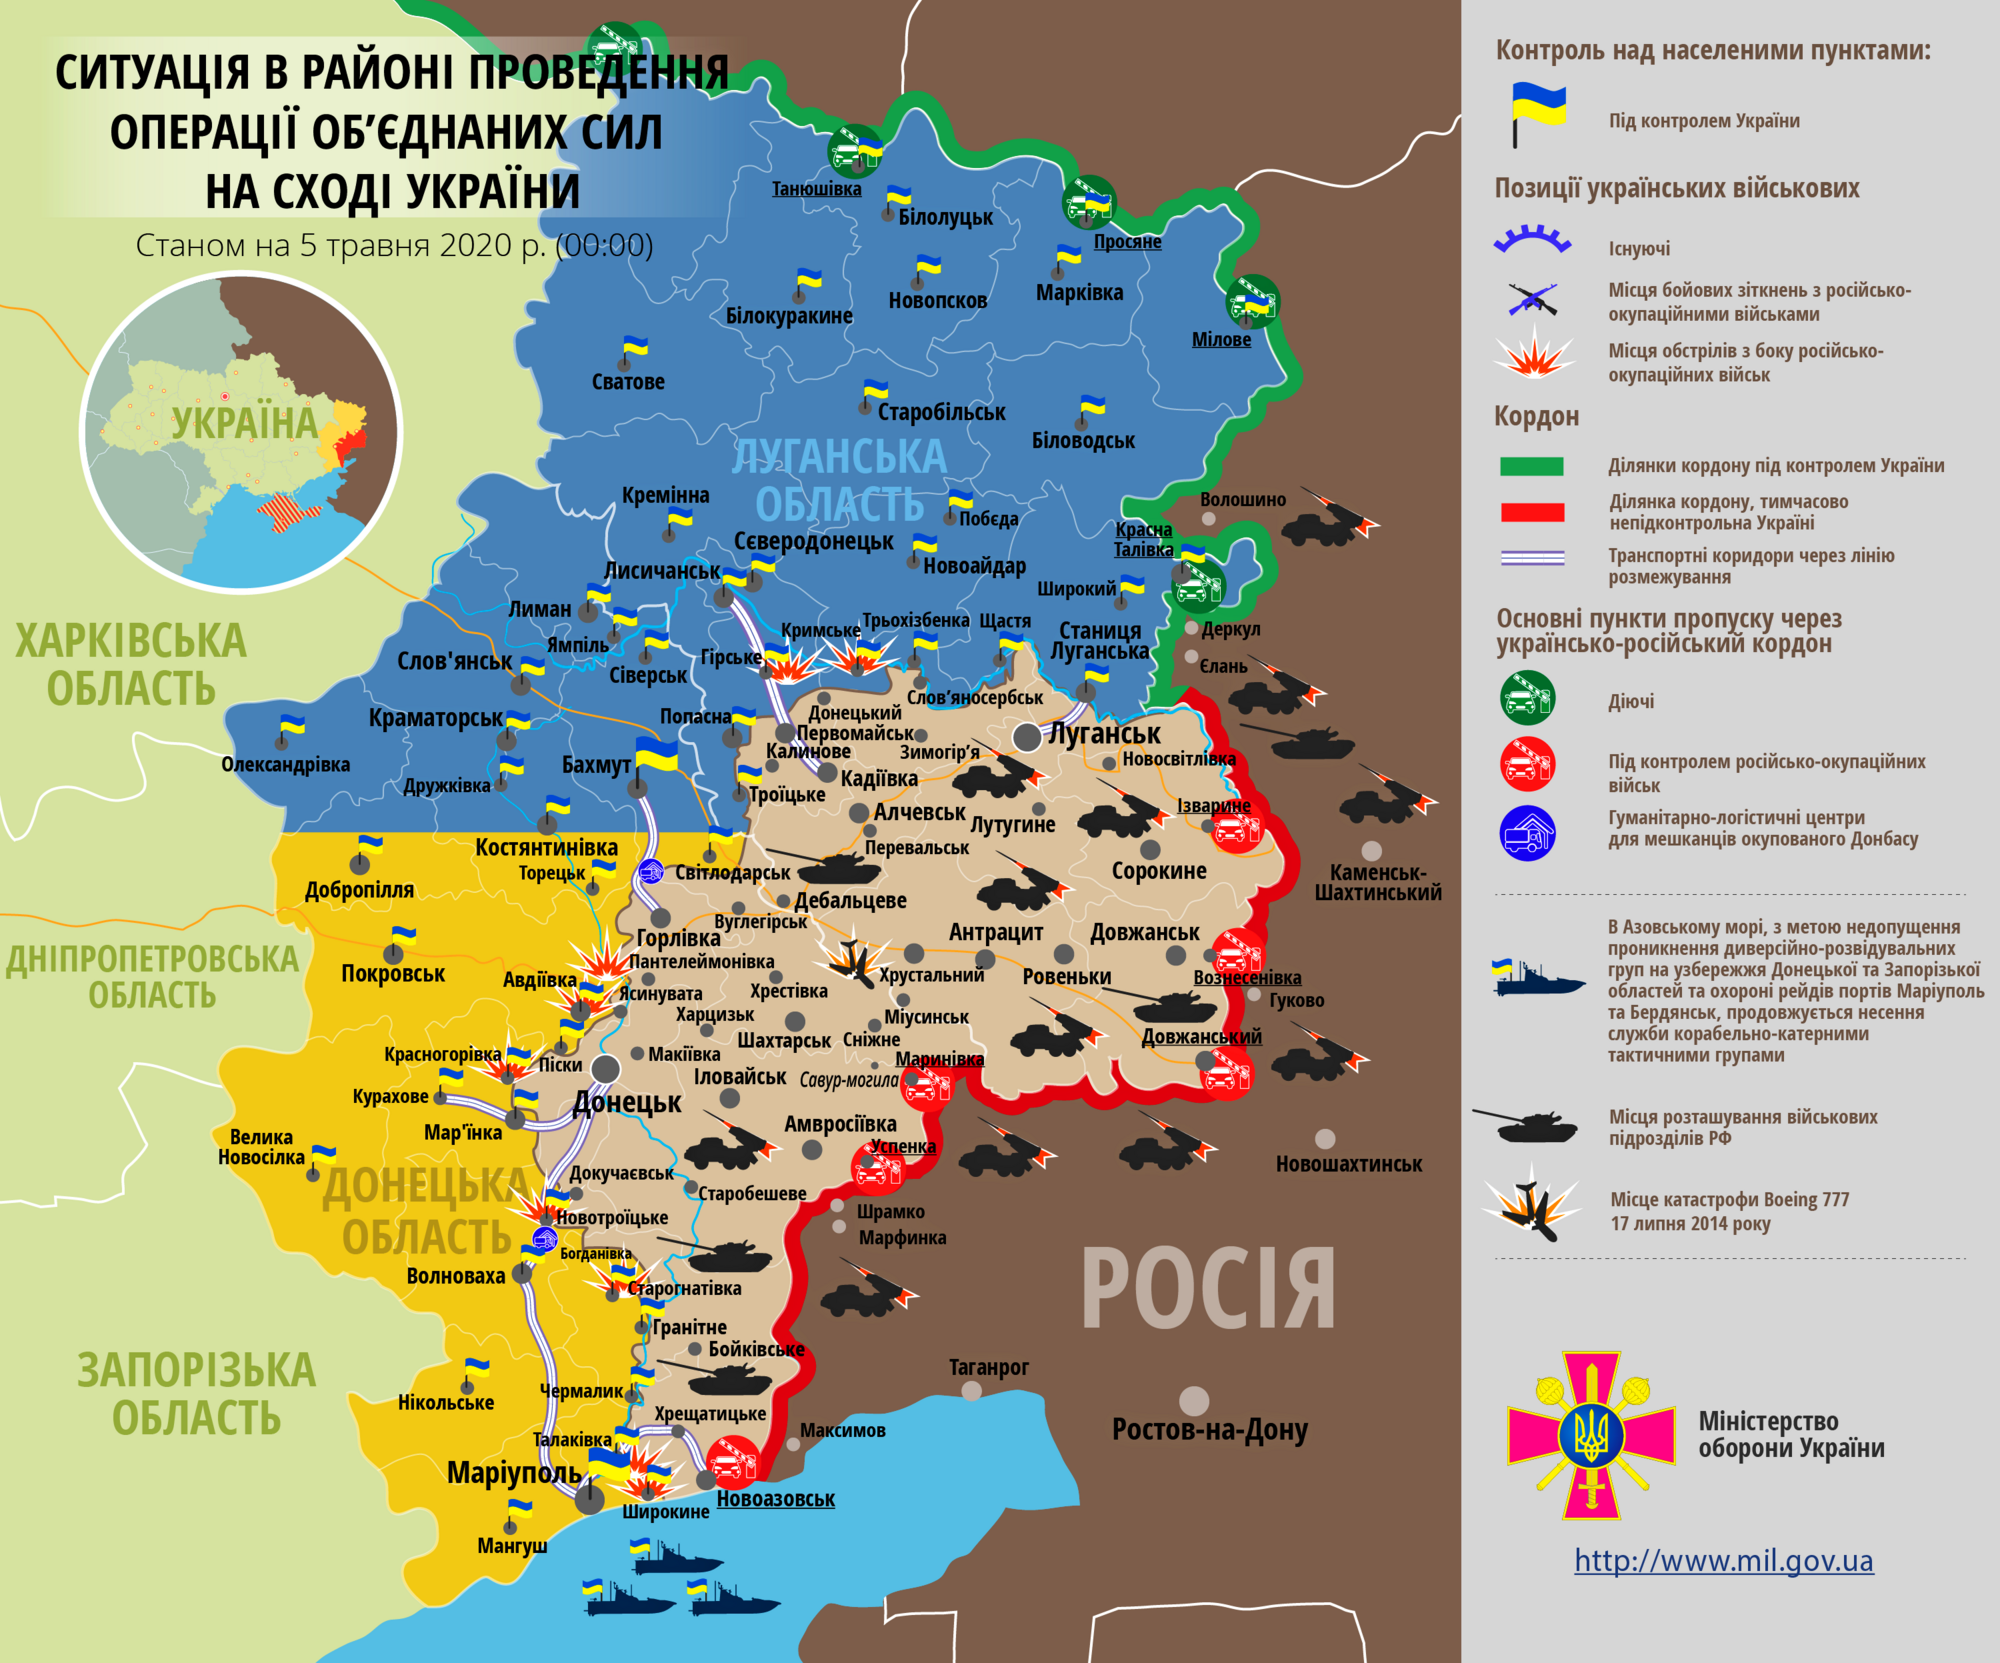 Ситуация в зоне проведения ООС на Донбассе 5 мая